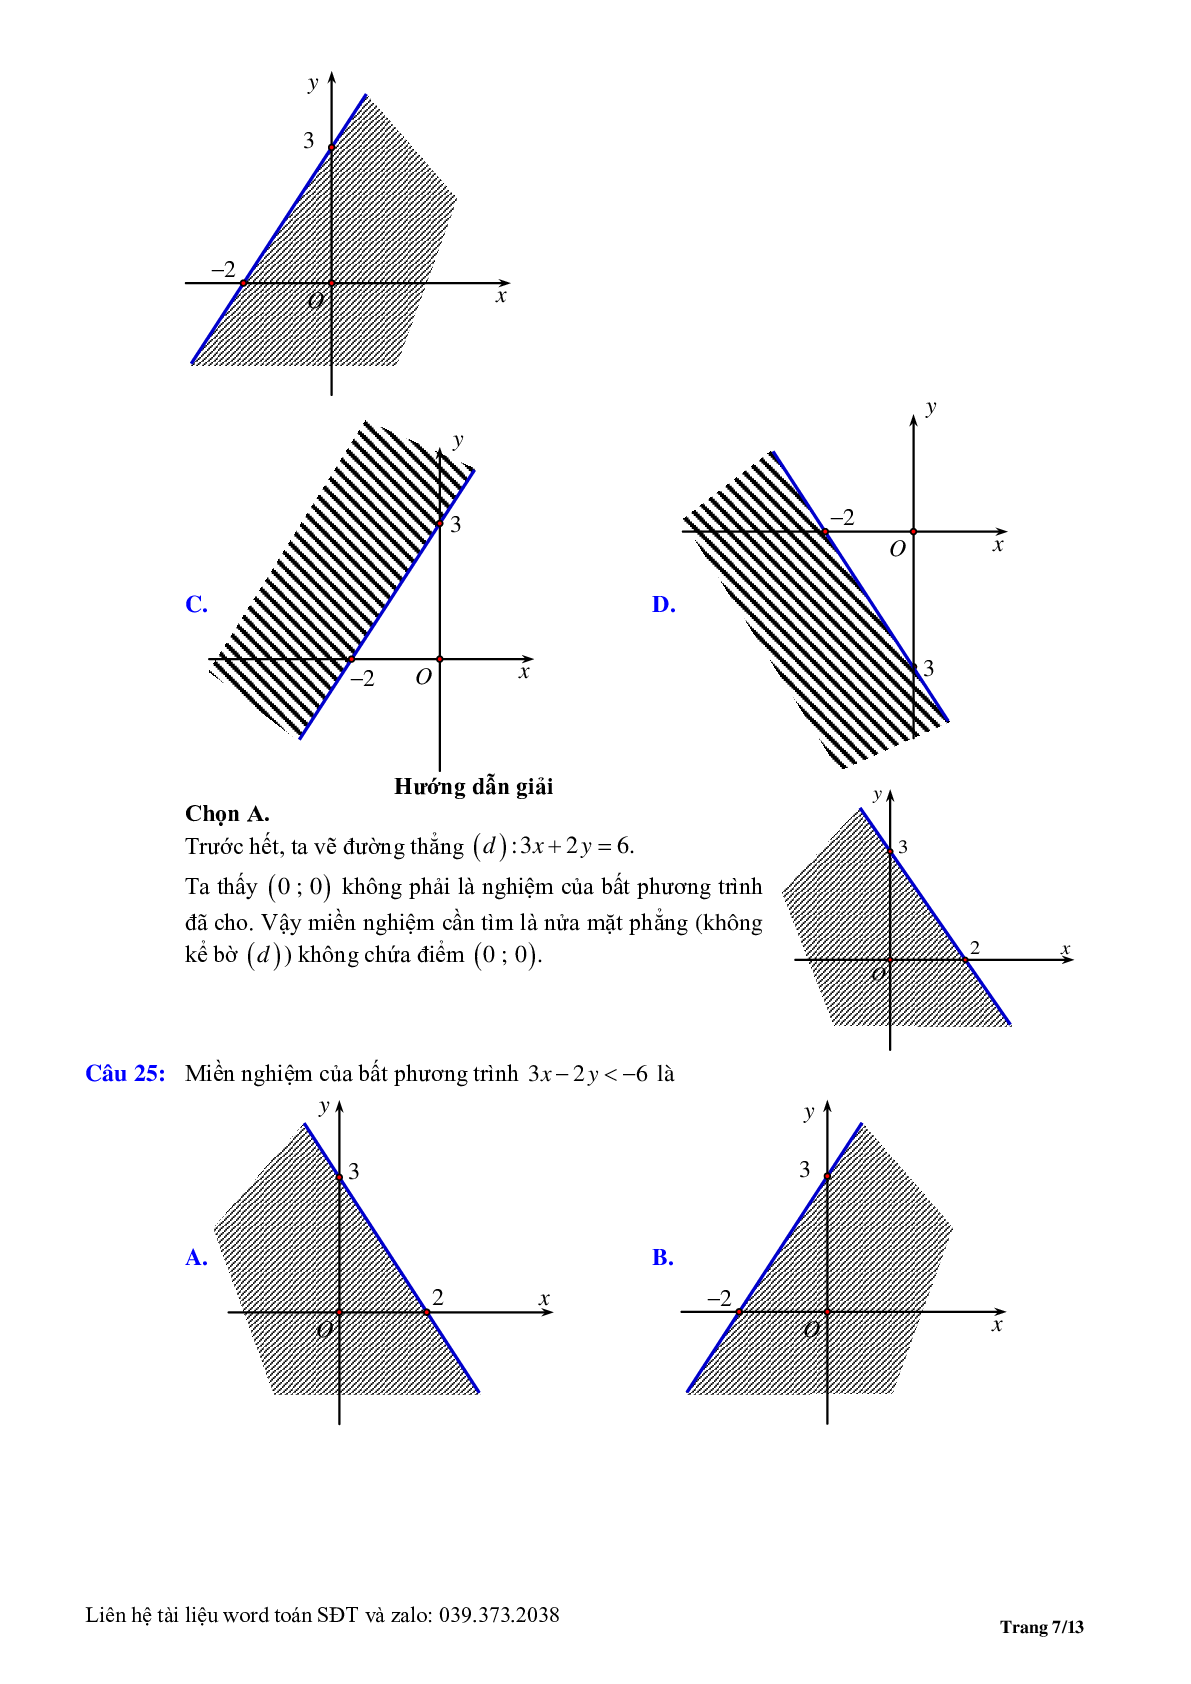 Chuyên đề bất phương trình, hệ phương trình bậc nhất hai ẩn (trang 7)